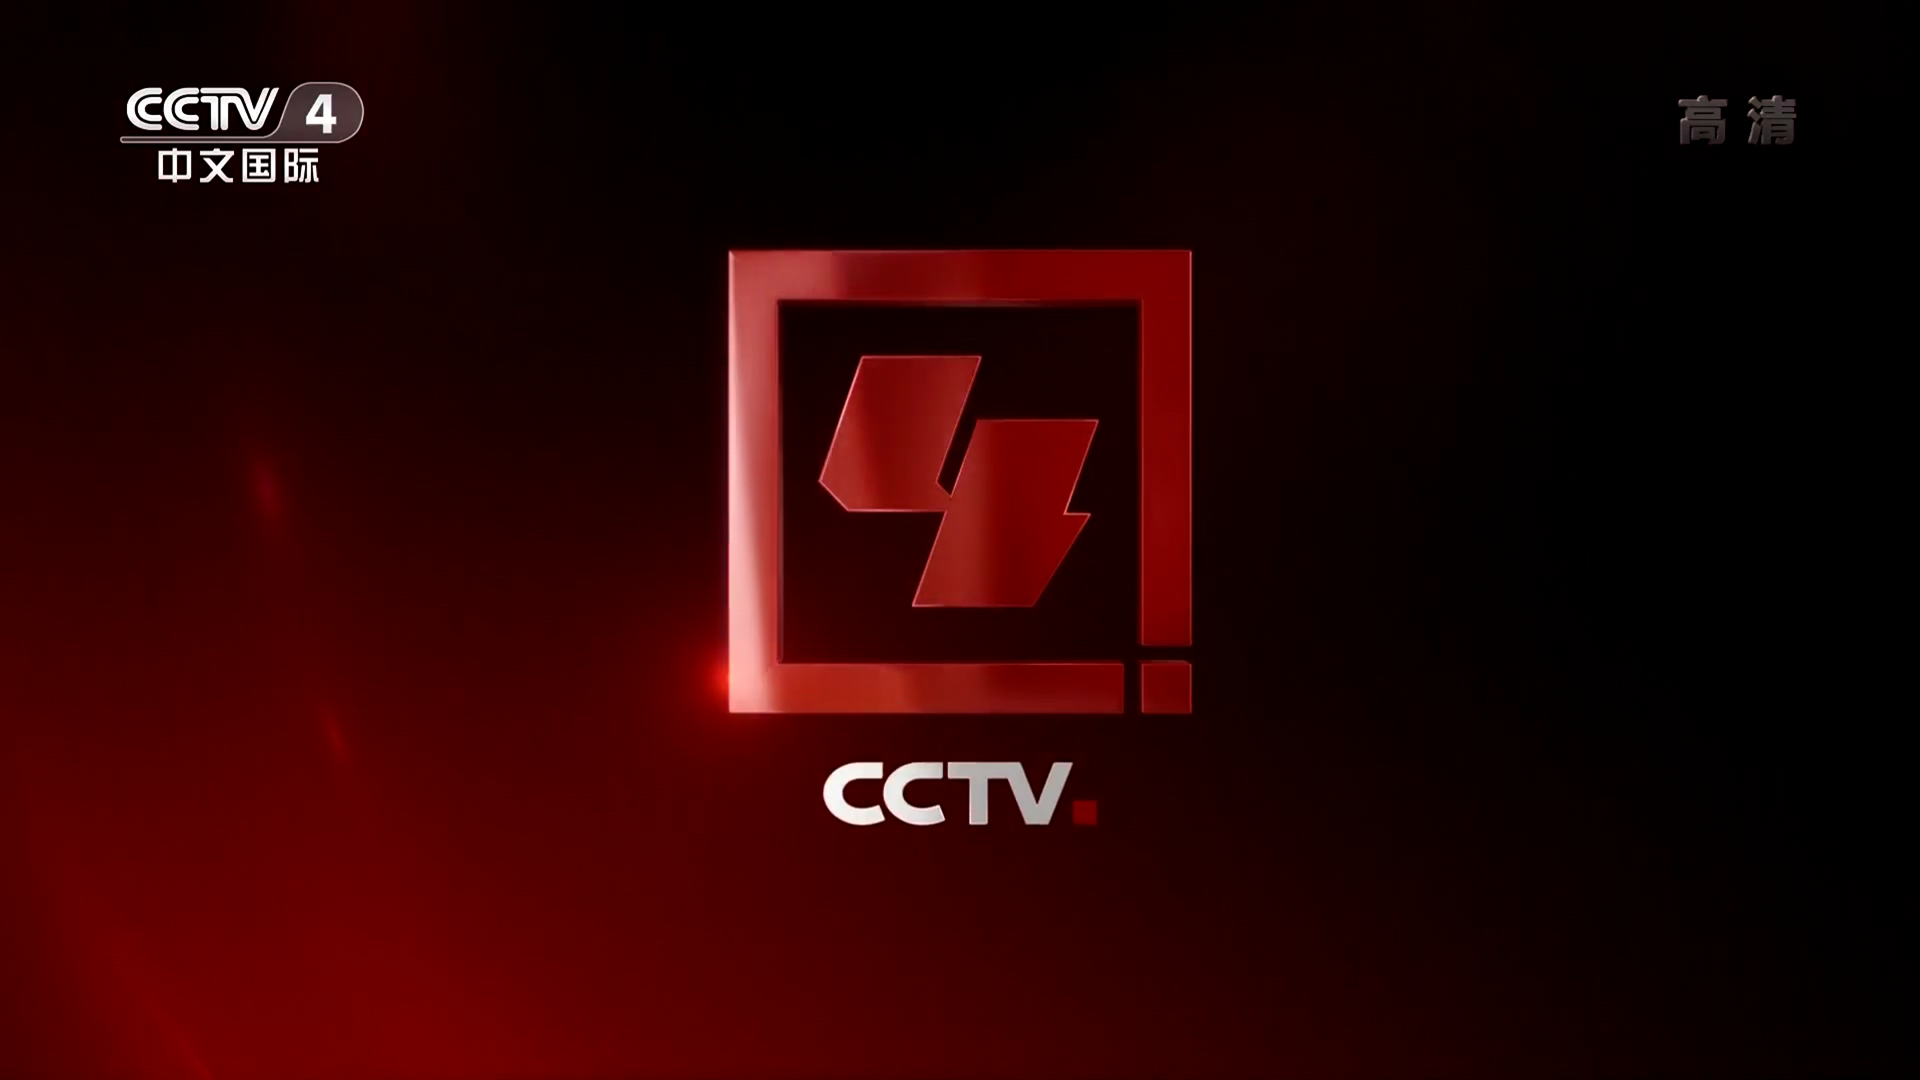 中央電視台中文國際頻道(CCTV-4)